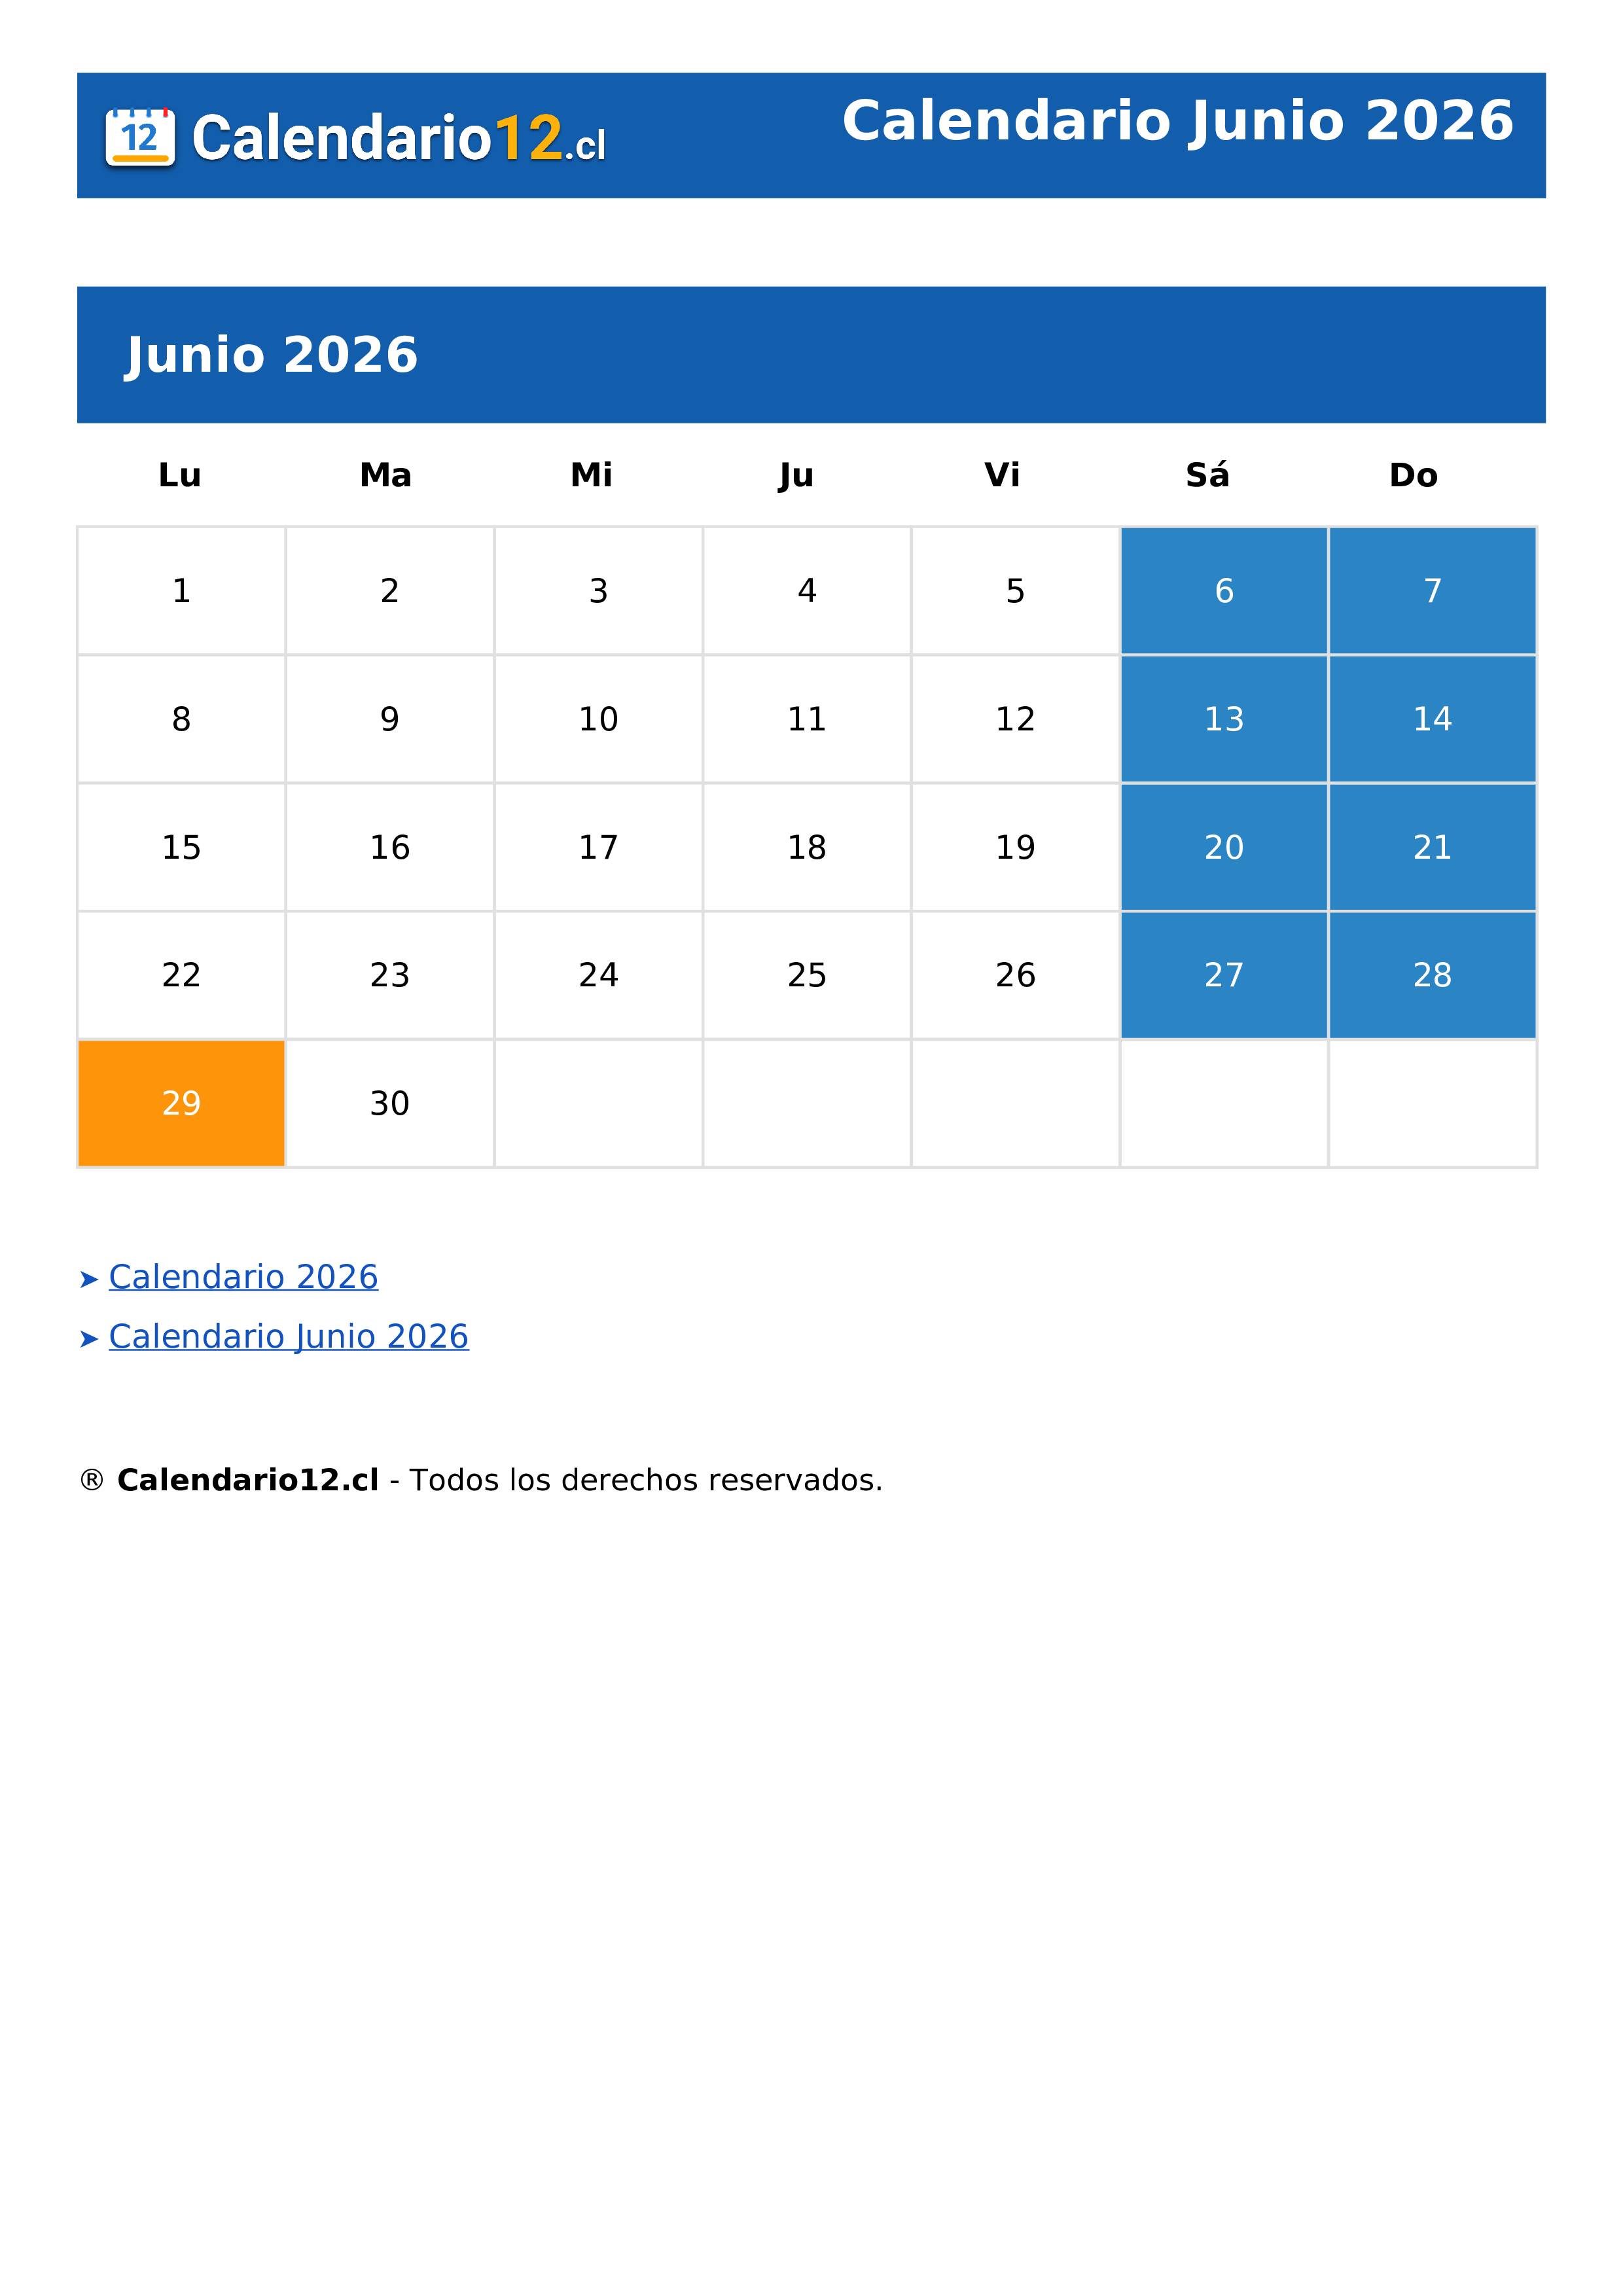 Calendario Junio 2026